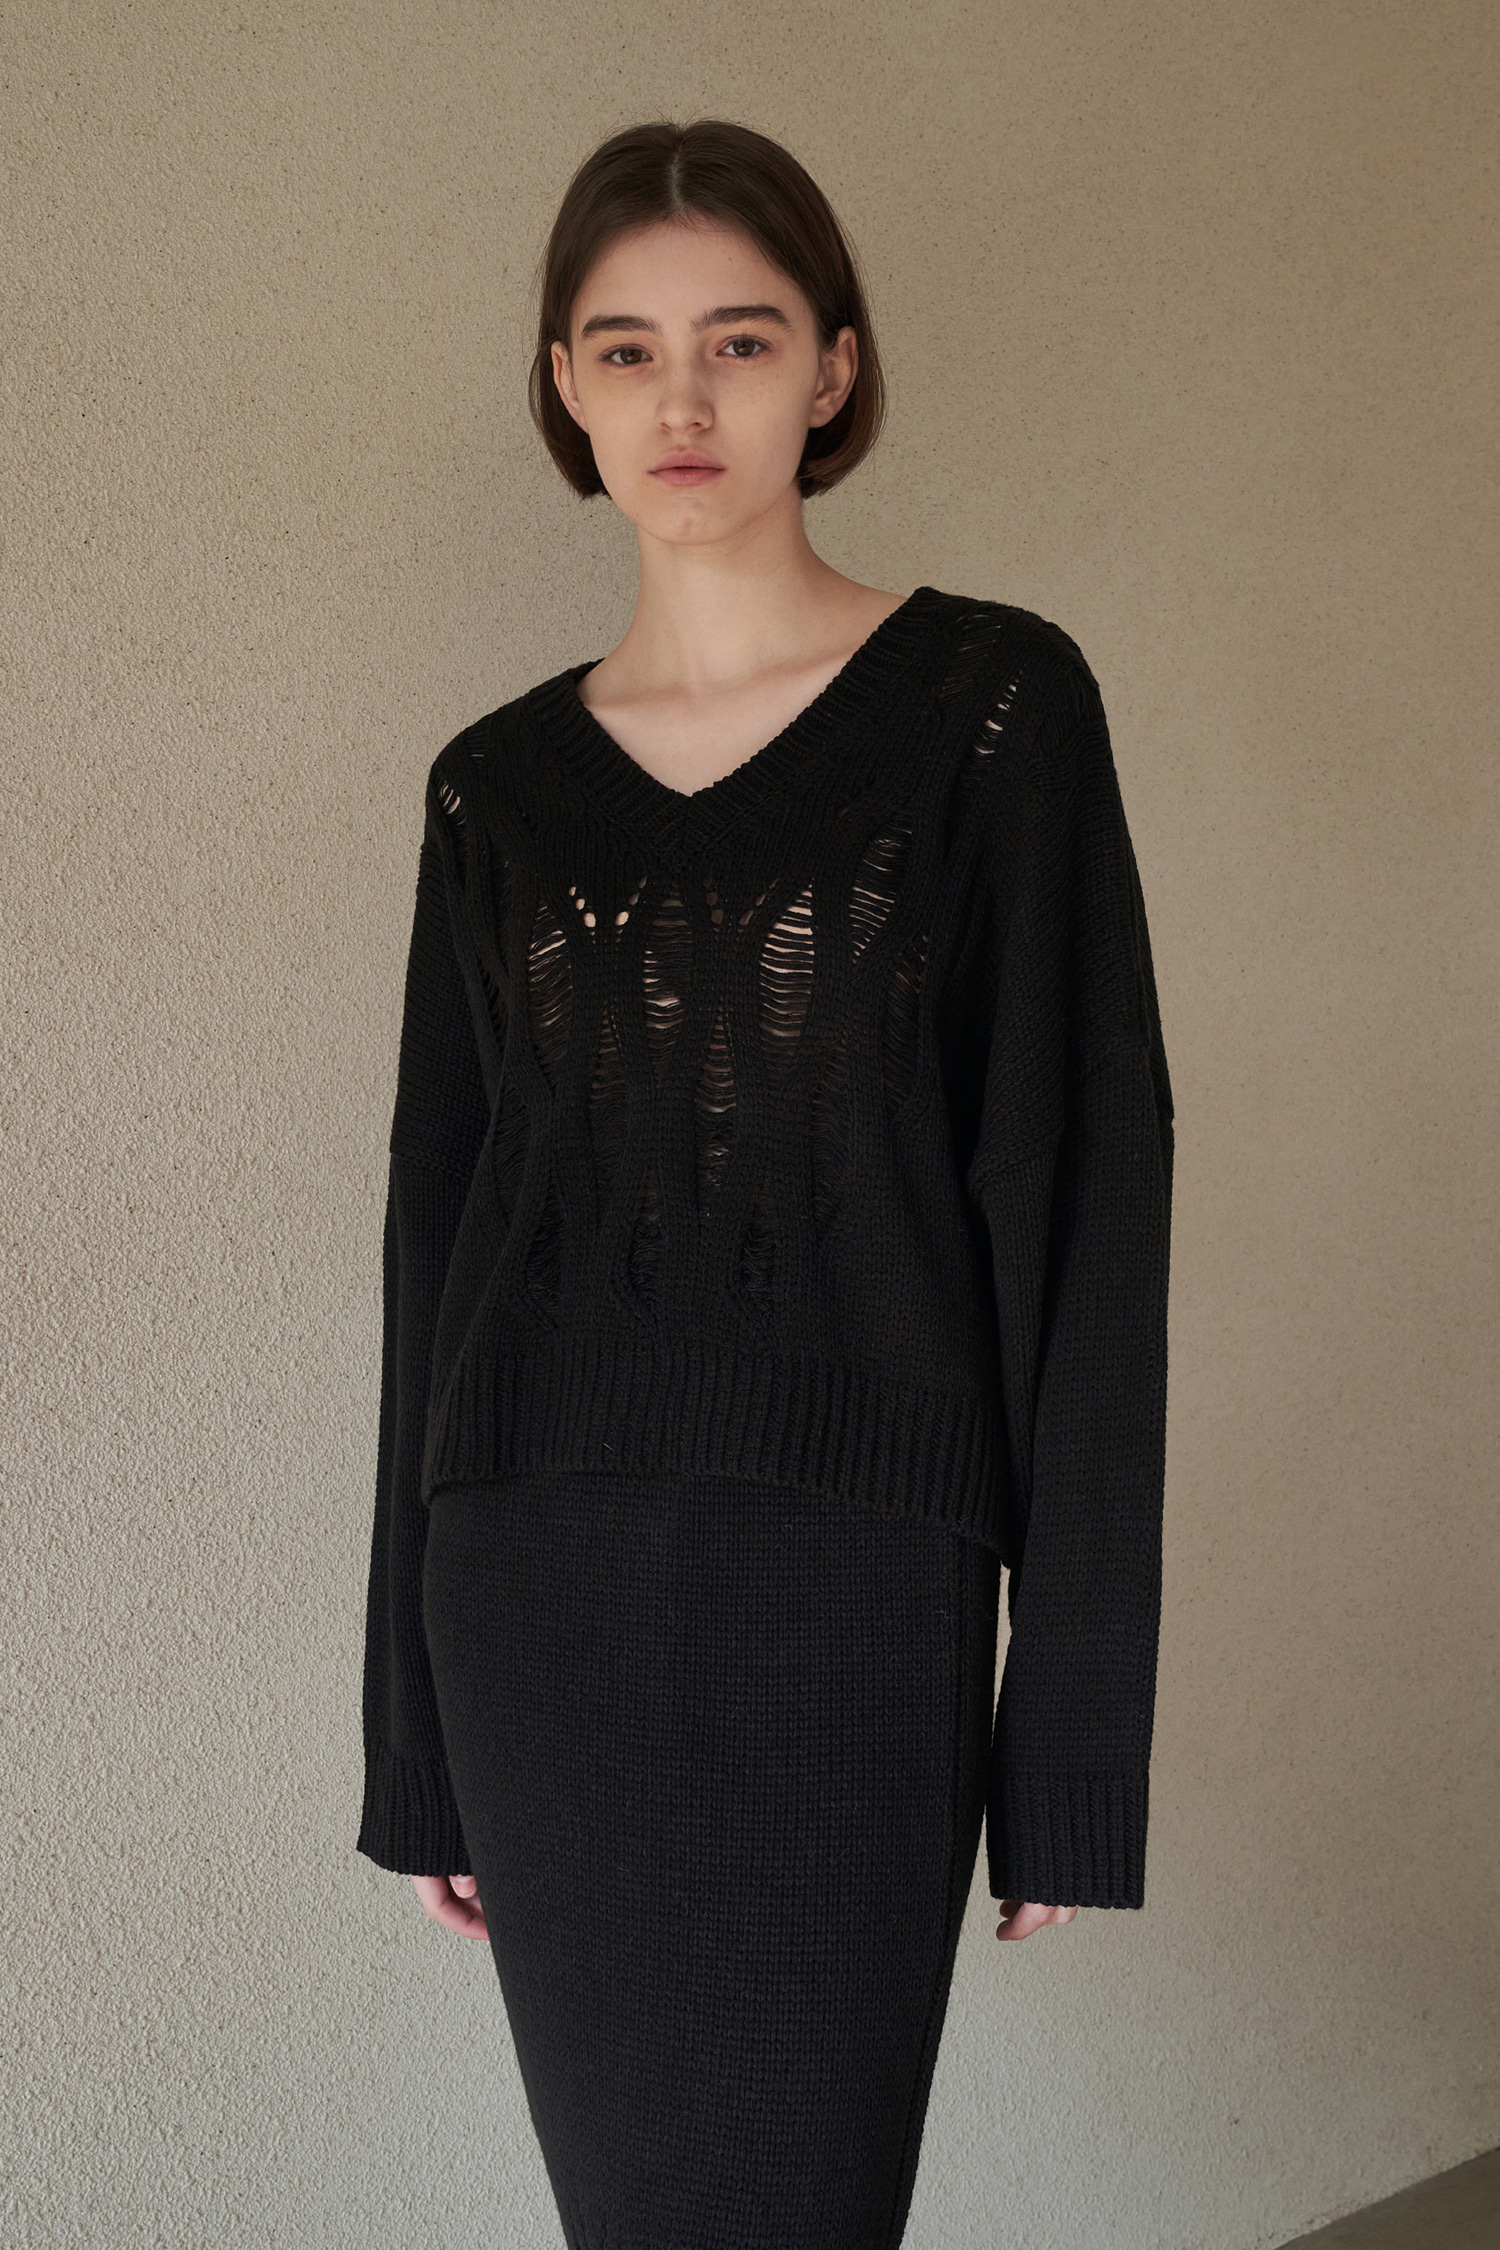 Netting v-neck knit - black